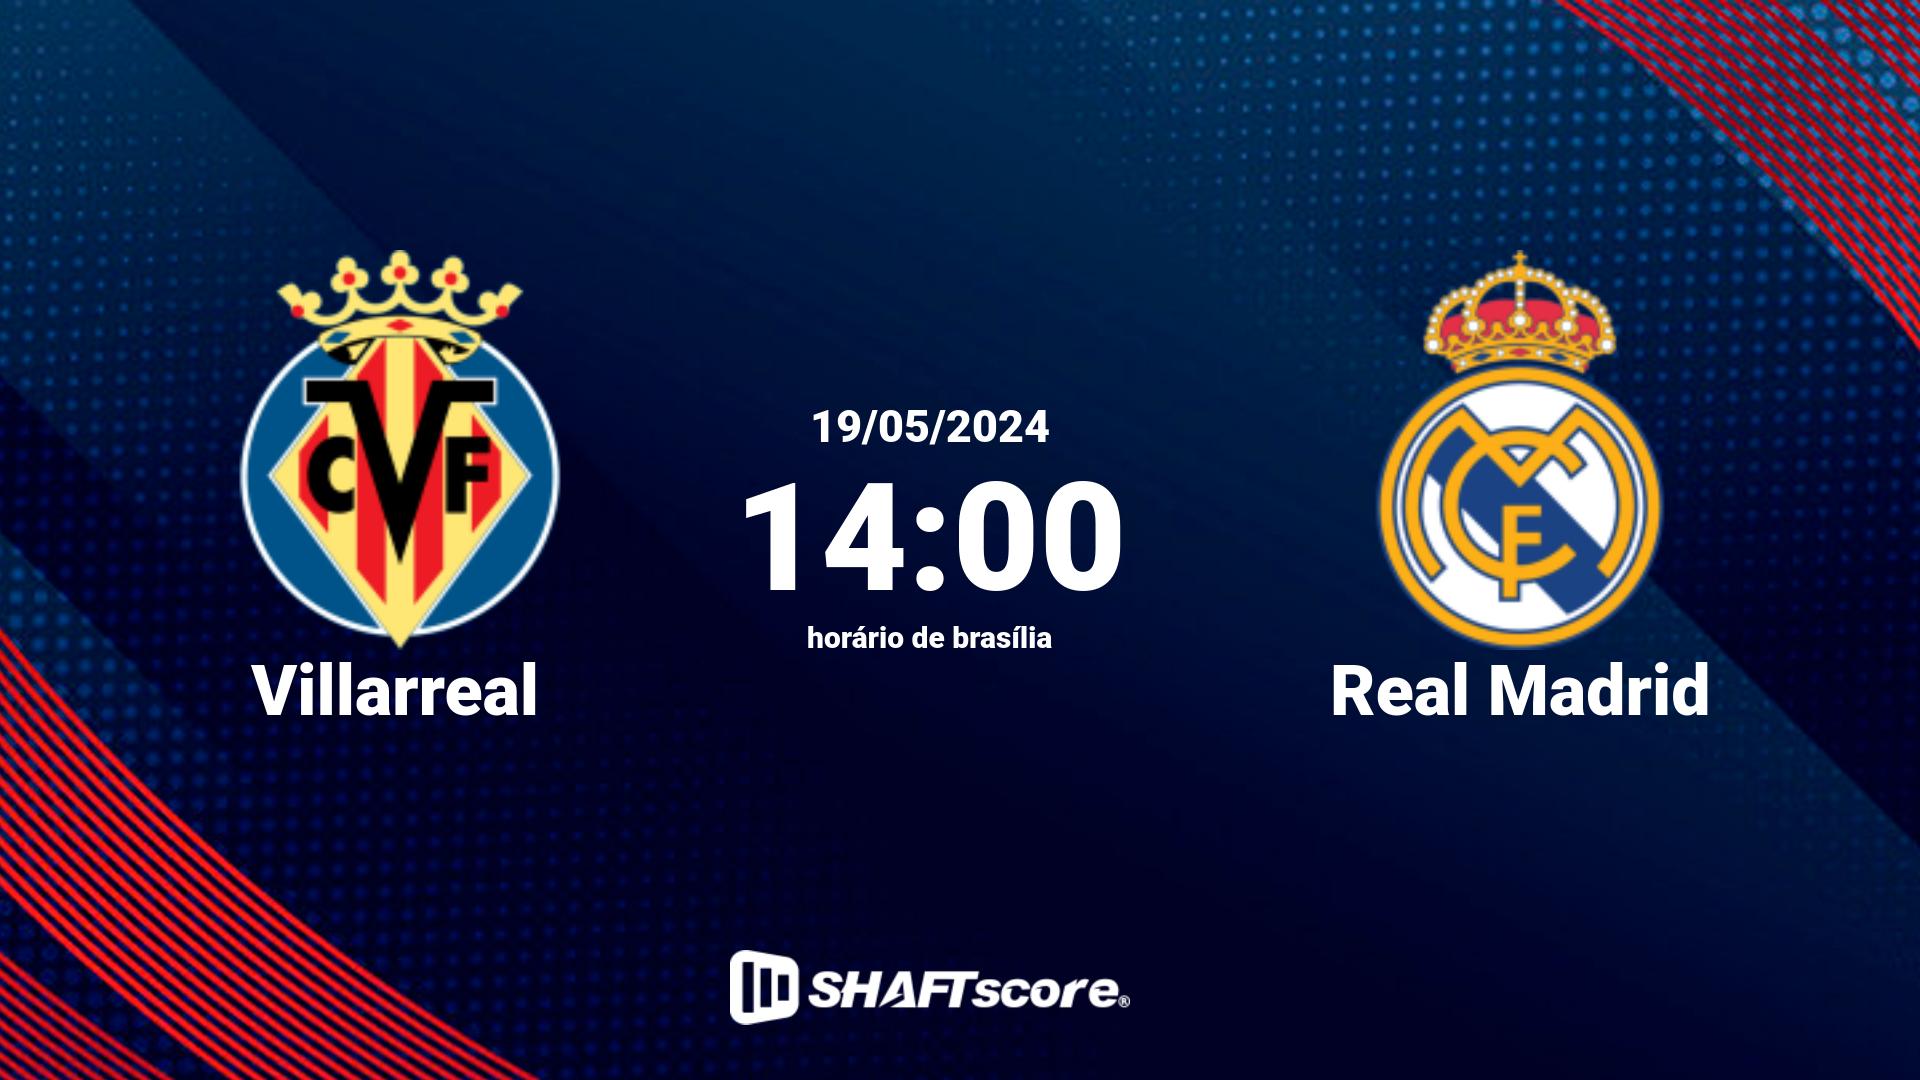 Estatísticas do jogo Villarreal vs Real Madrid 19.05 14:00